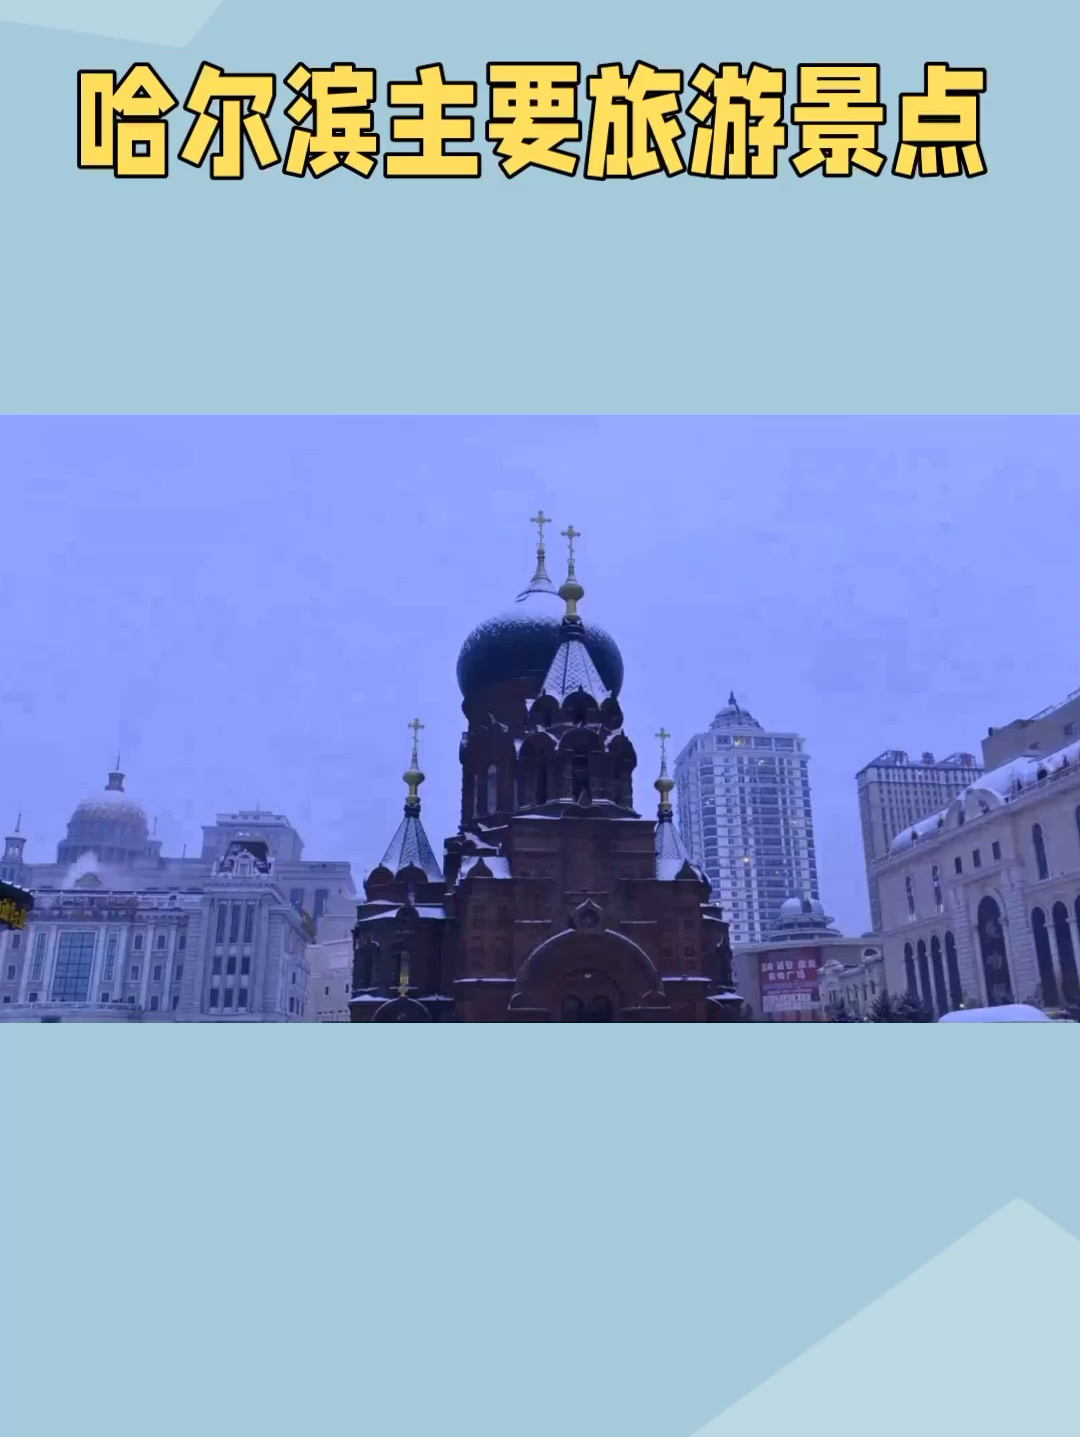 哈尔滨是一个著名的旅游城市，以其独特的欧式建筑艺术和冬季的冰雪项目而闻名，冬季是哈尔滨旅游的高峰期，